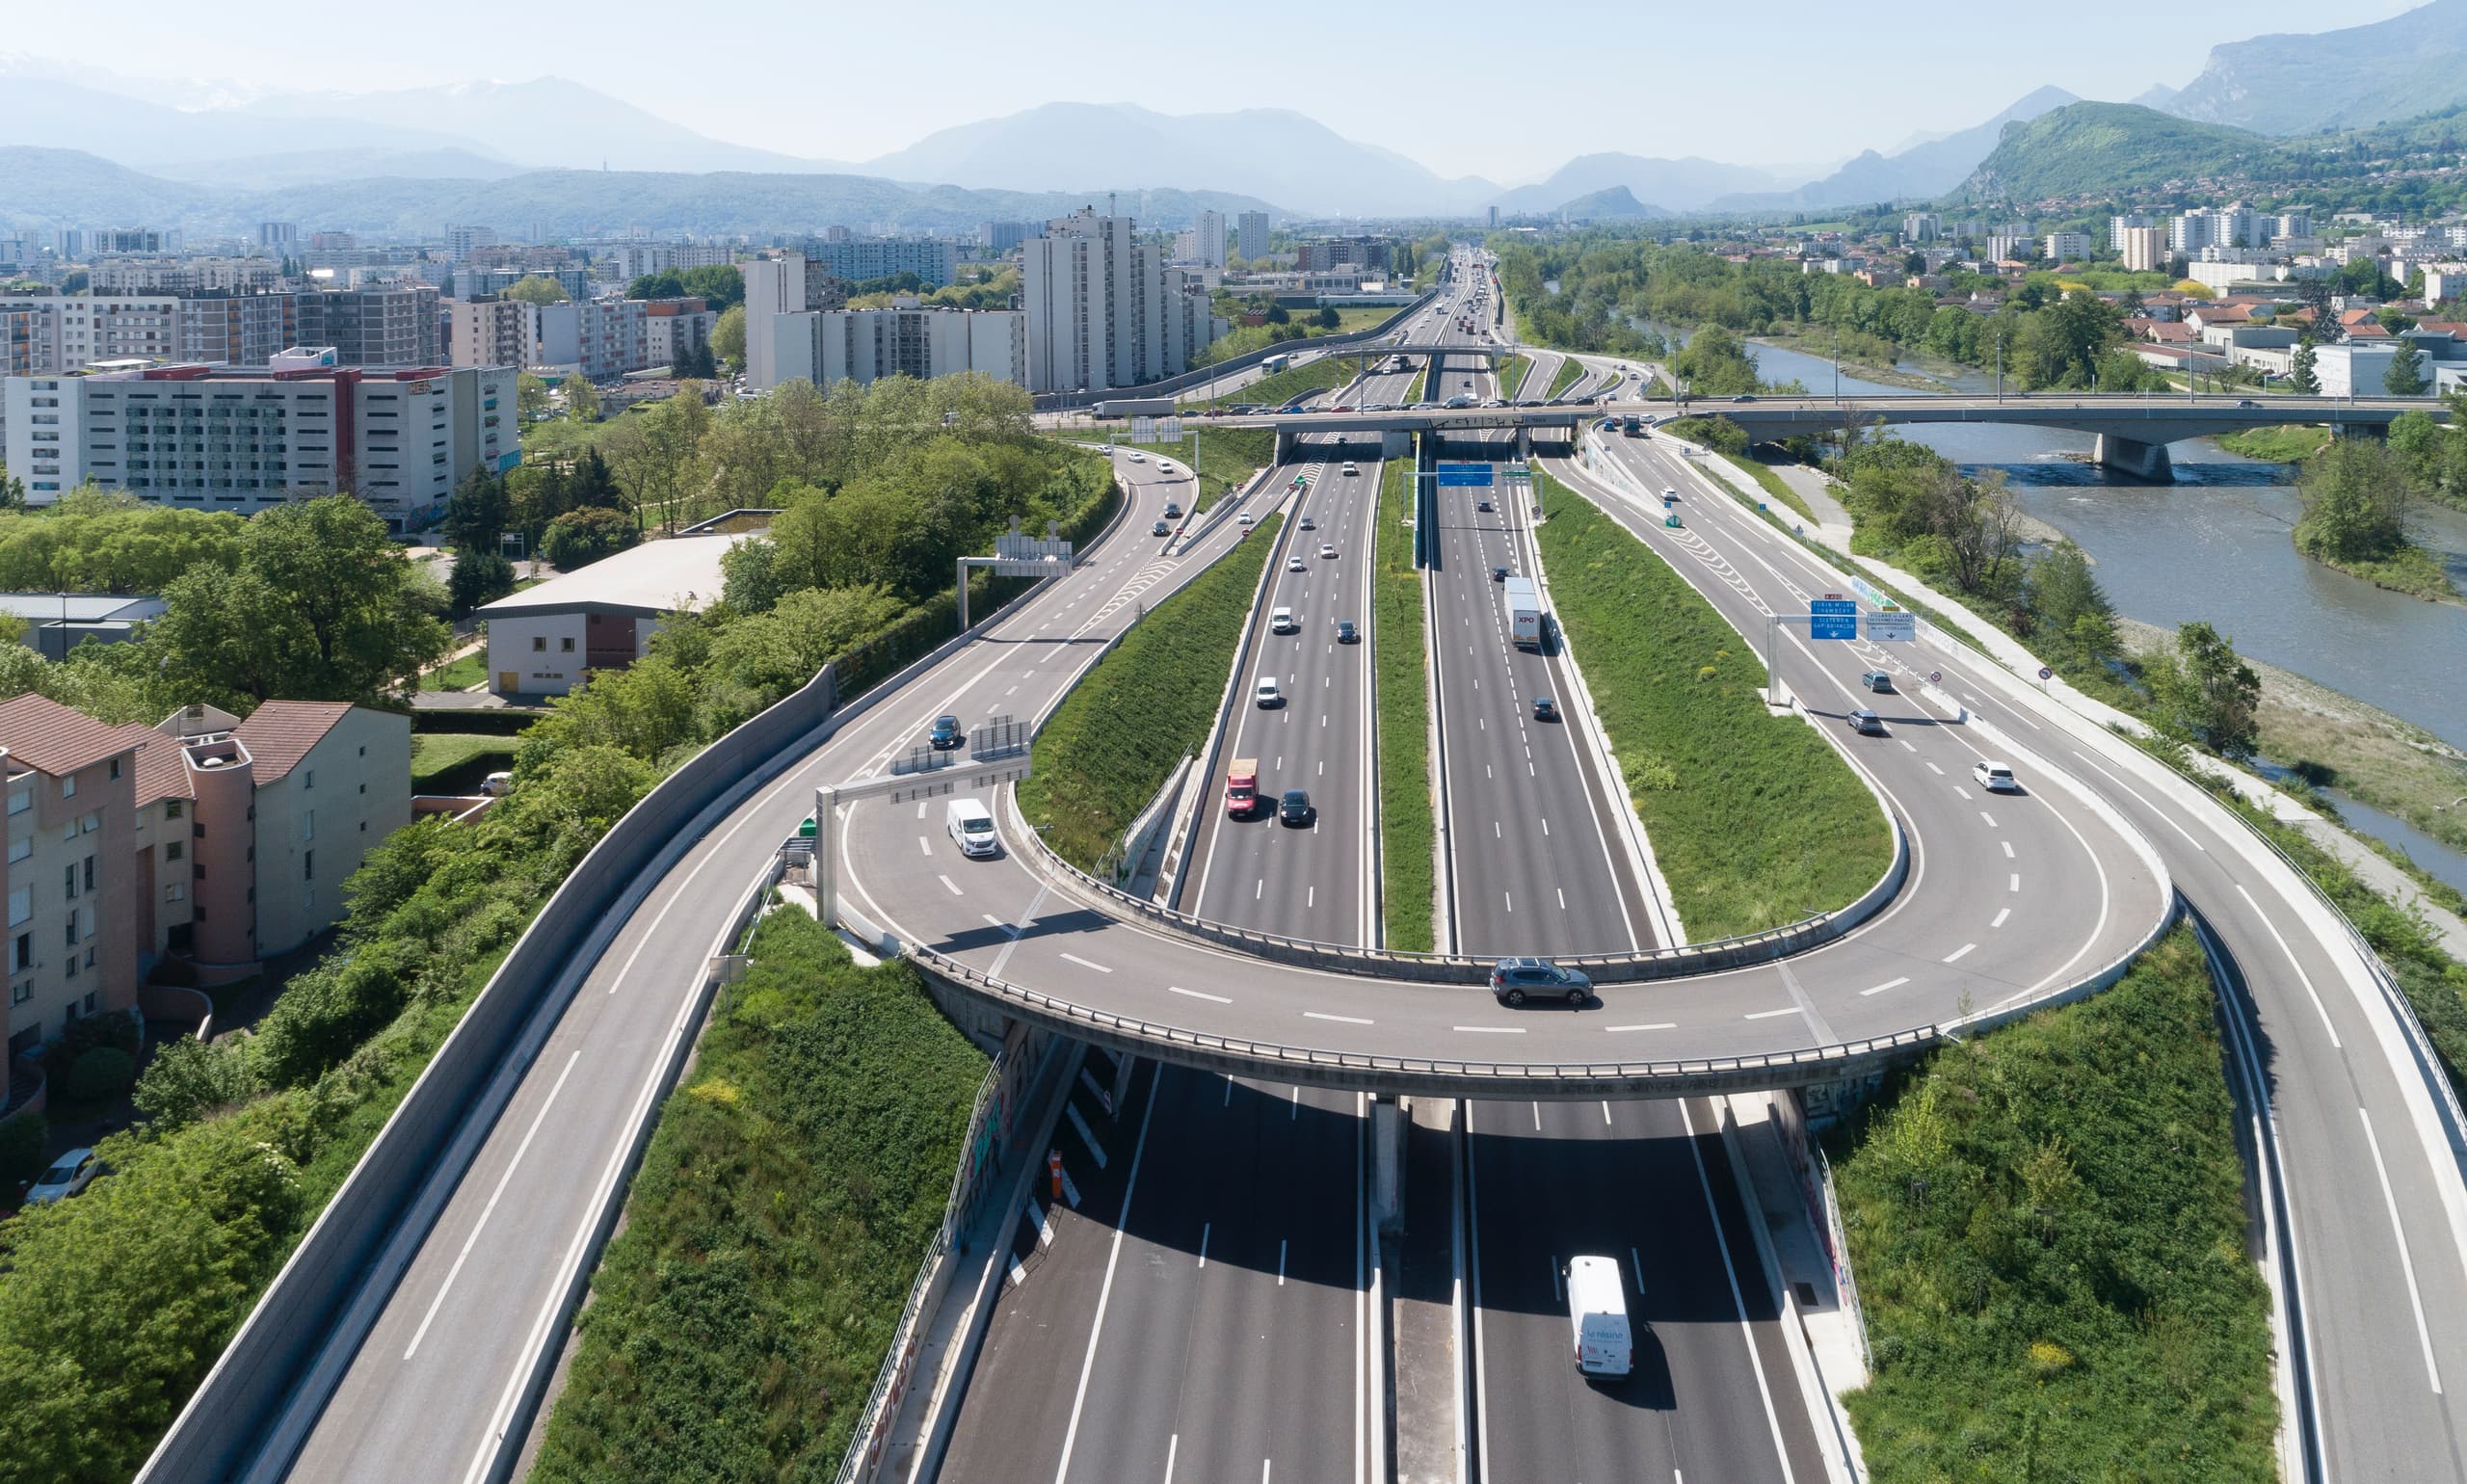 Autoroute intégrée A480 au niveau du diffuseur de Catane sur la ville de Grenoble